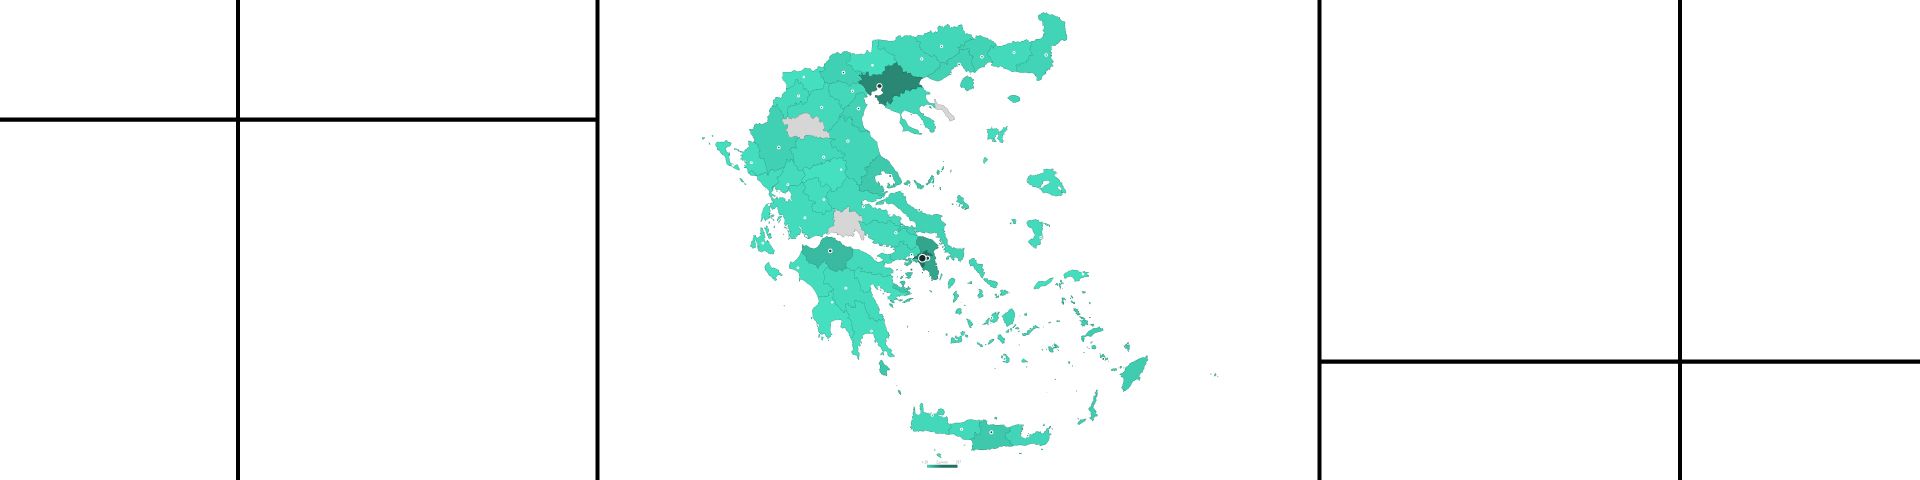 Σχολικά Προγράμματα ΚΠΙΣΝ 2020-2021 | Δίπλα στη σχολική κοινότητα, σε κάθε σημείο της Ελλάδας - Εικόνα